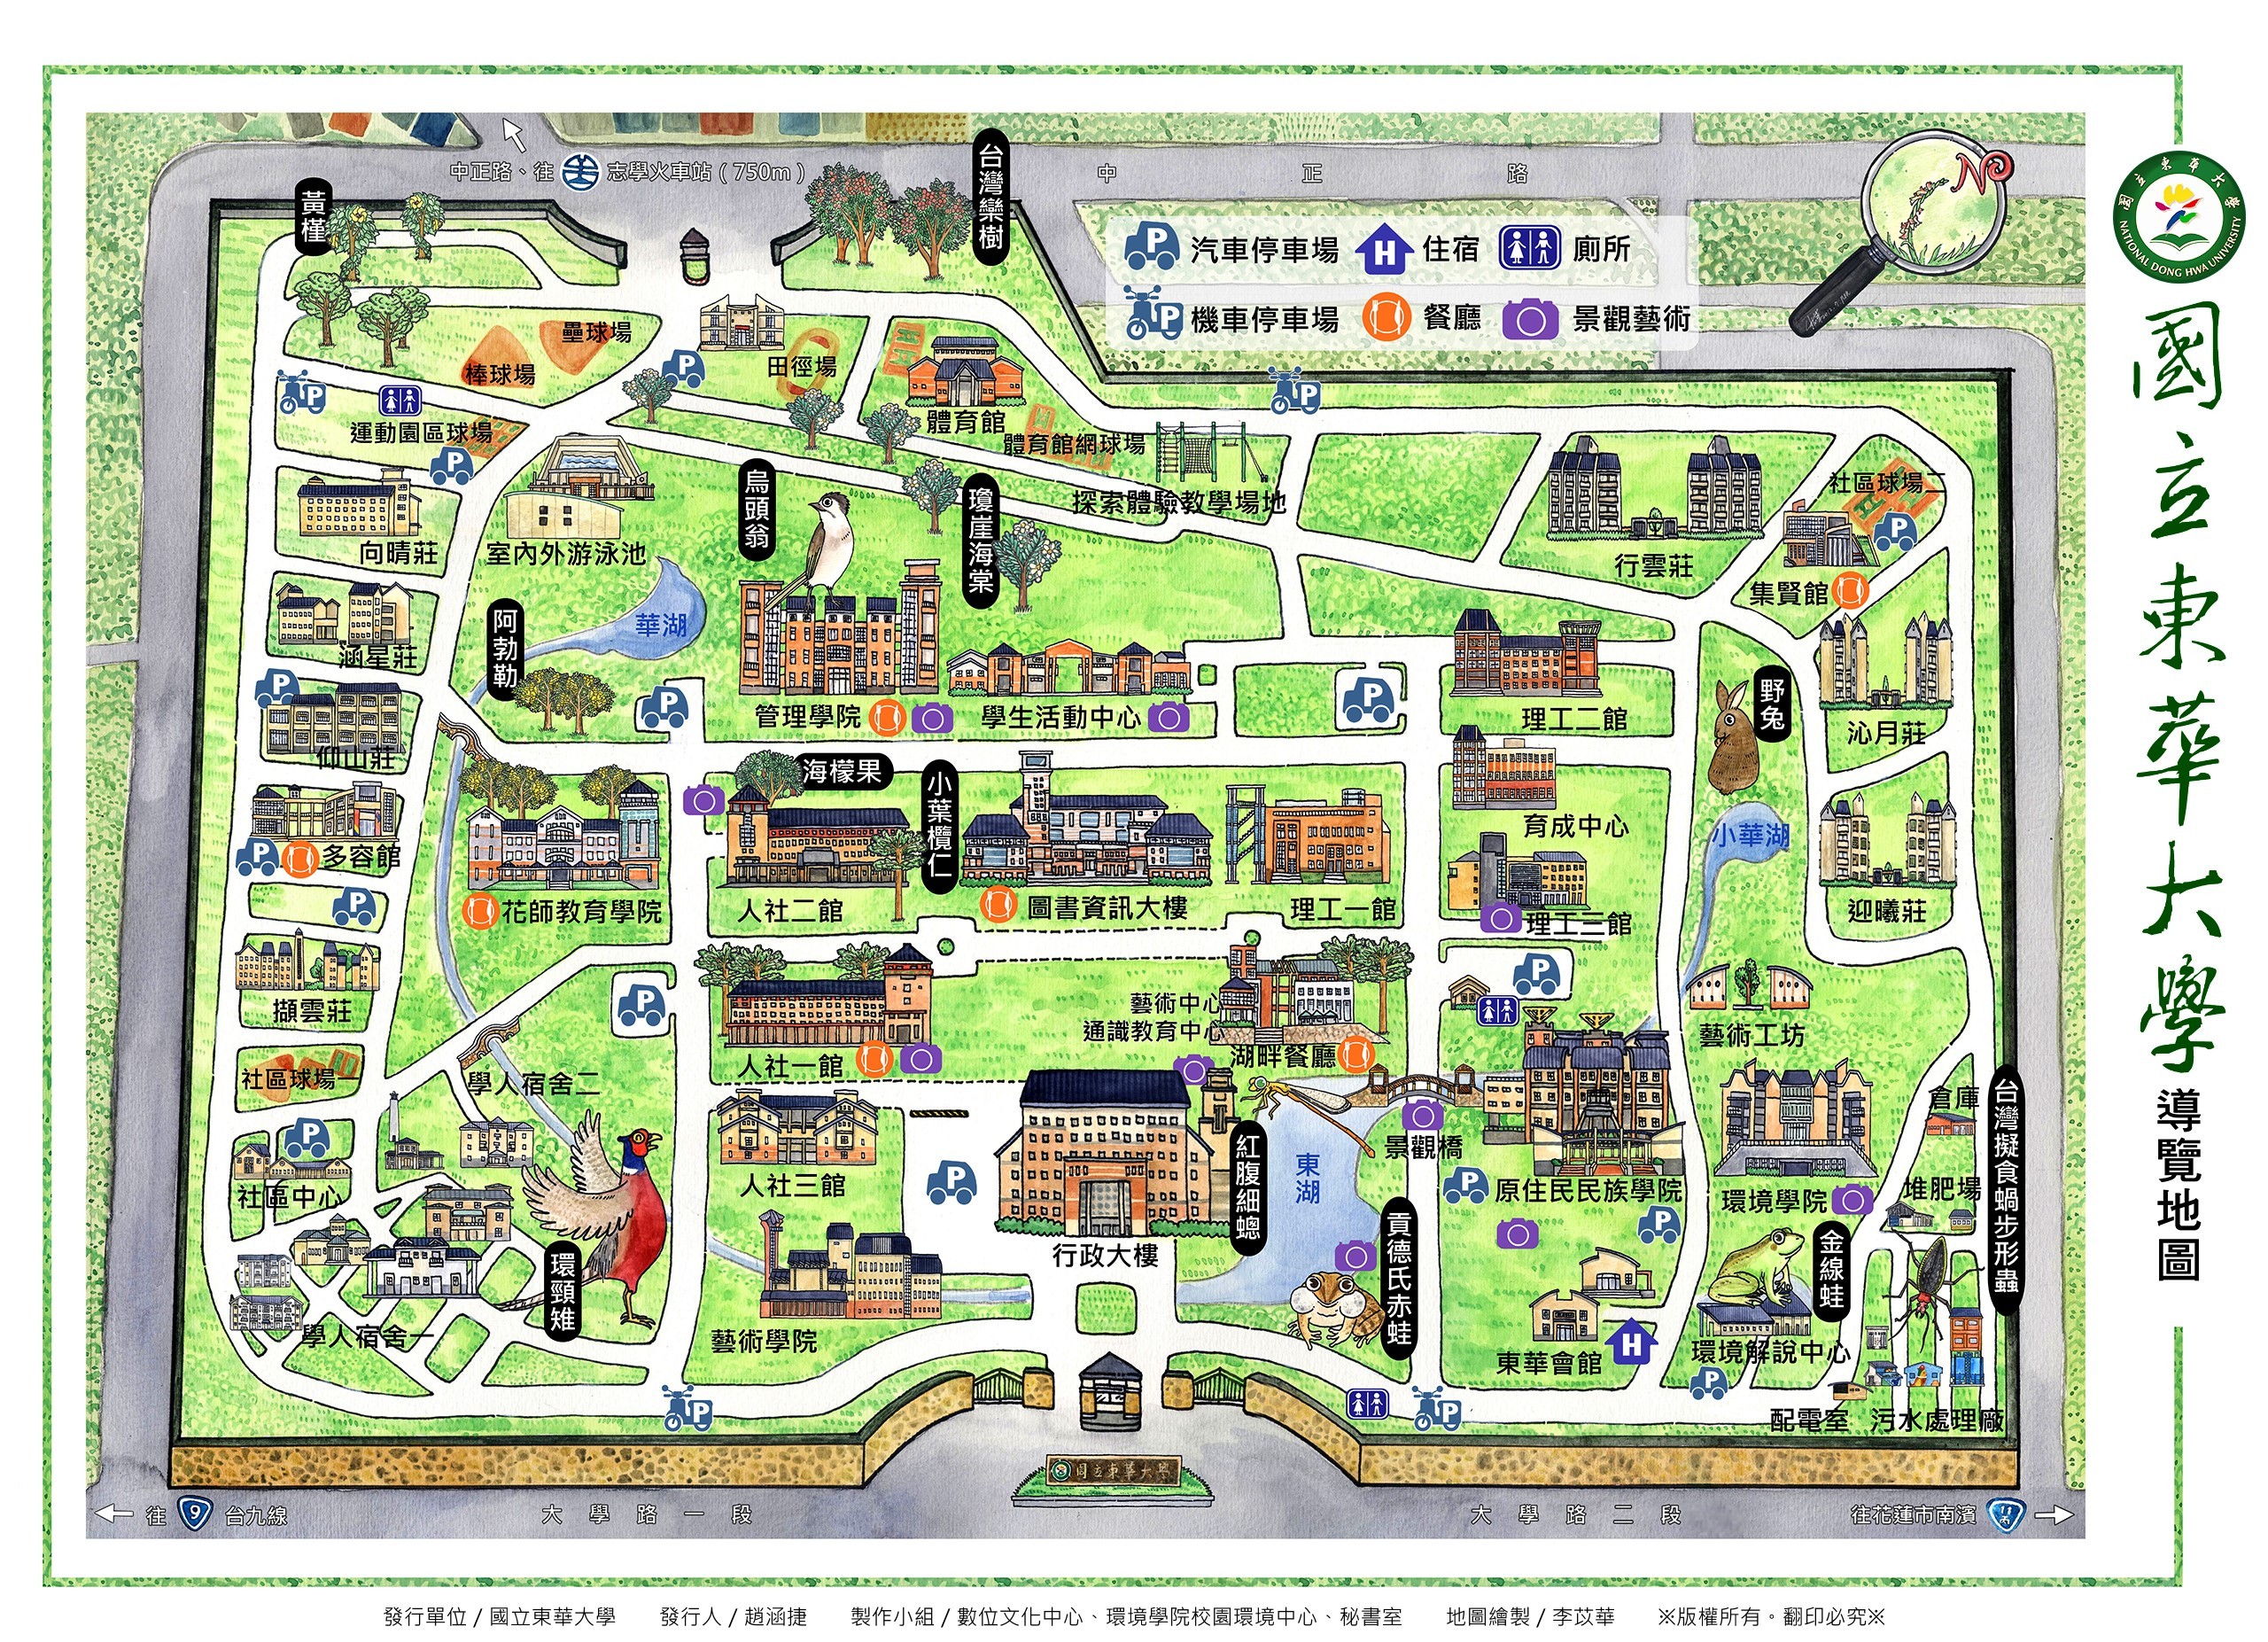 校園生態地圖《簡單版》